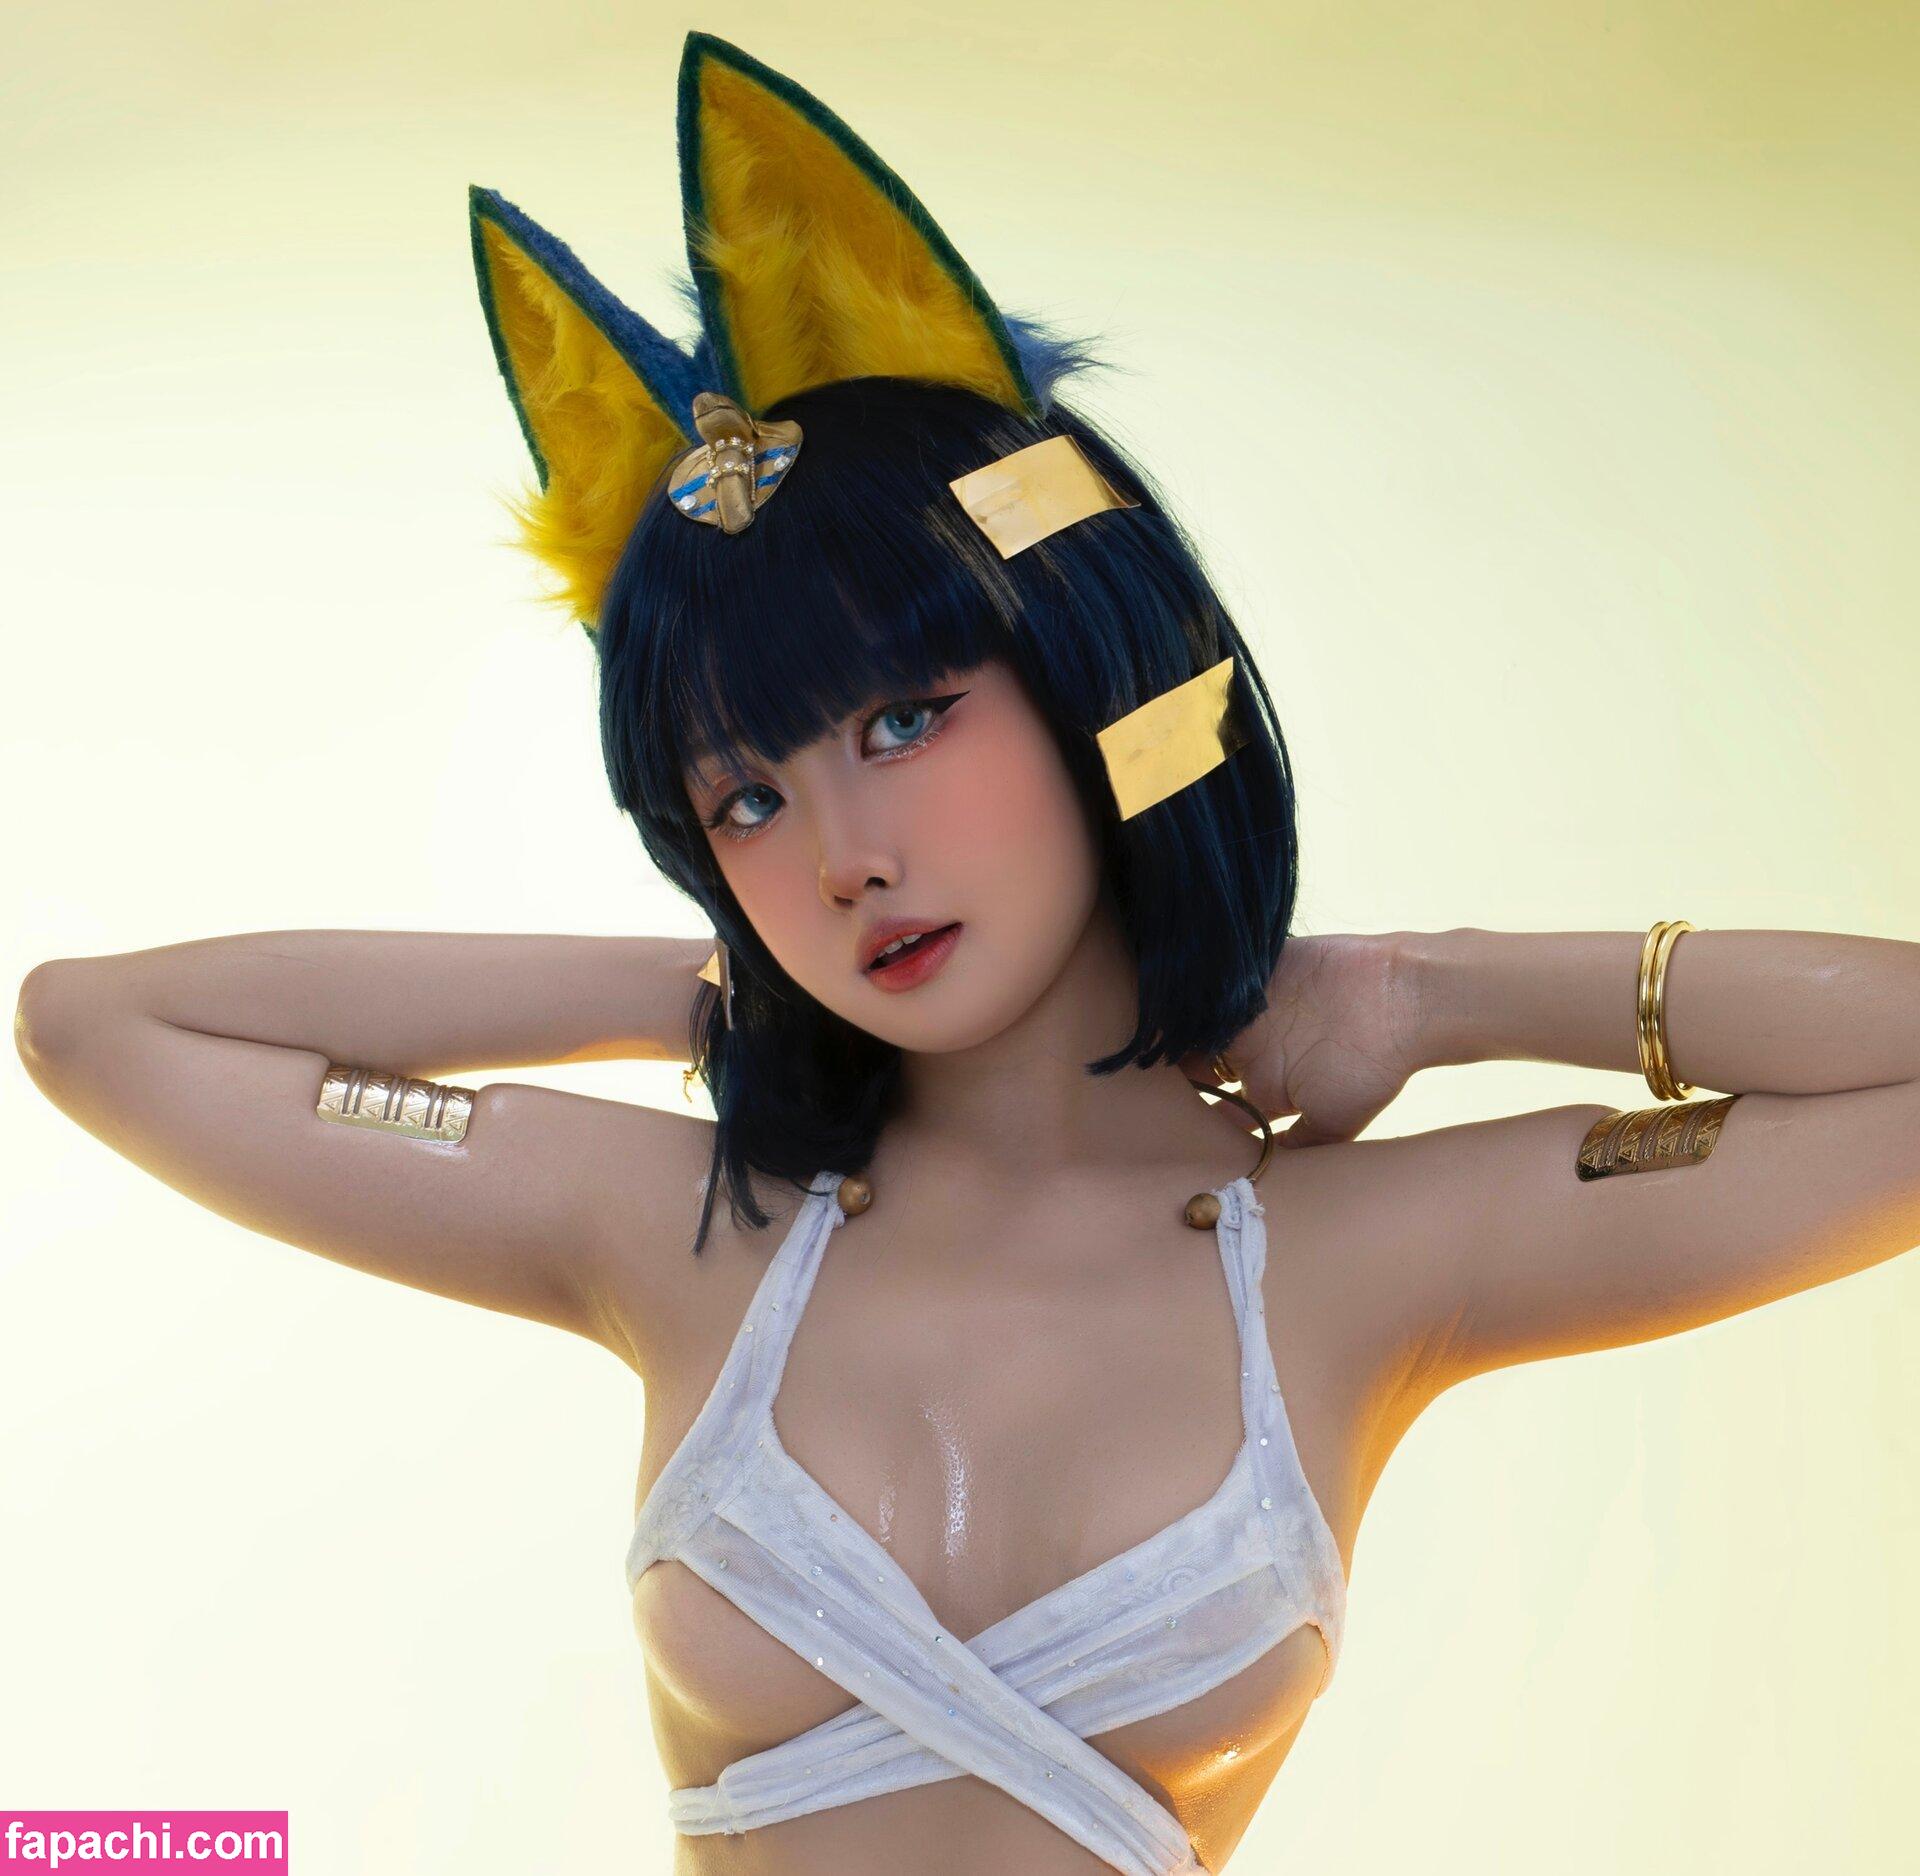 Higashi / KawaiiHigashi leaked nude photo #0006 from OnlyFans/Patreon